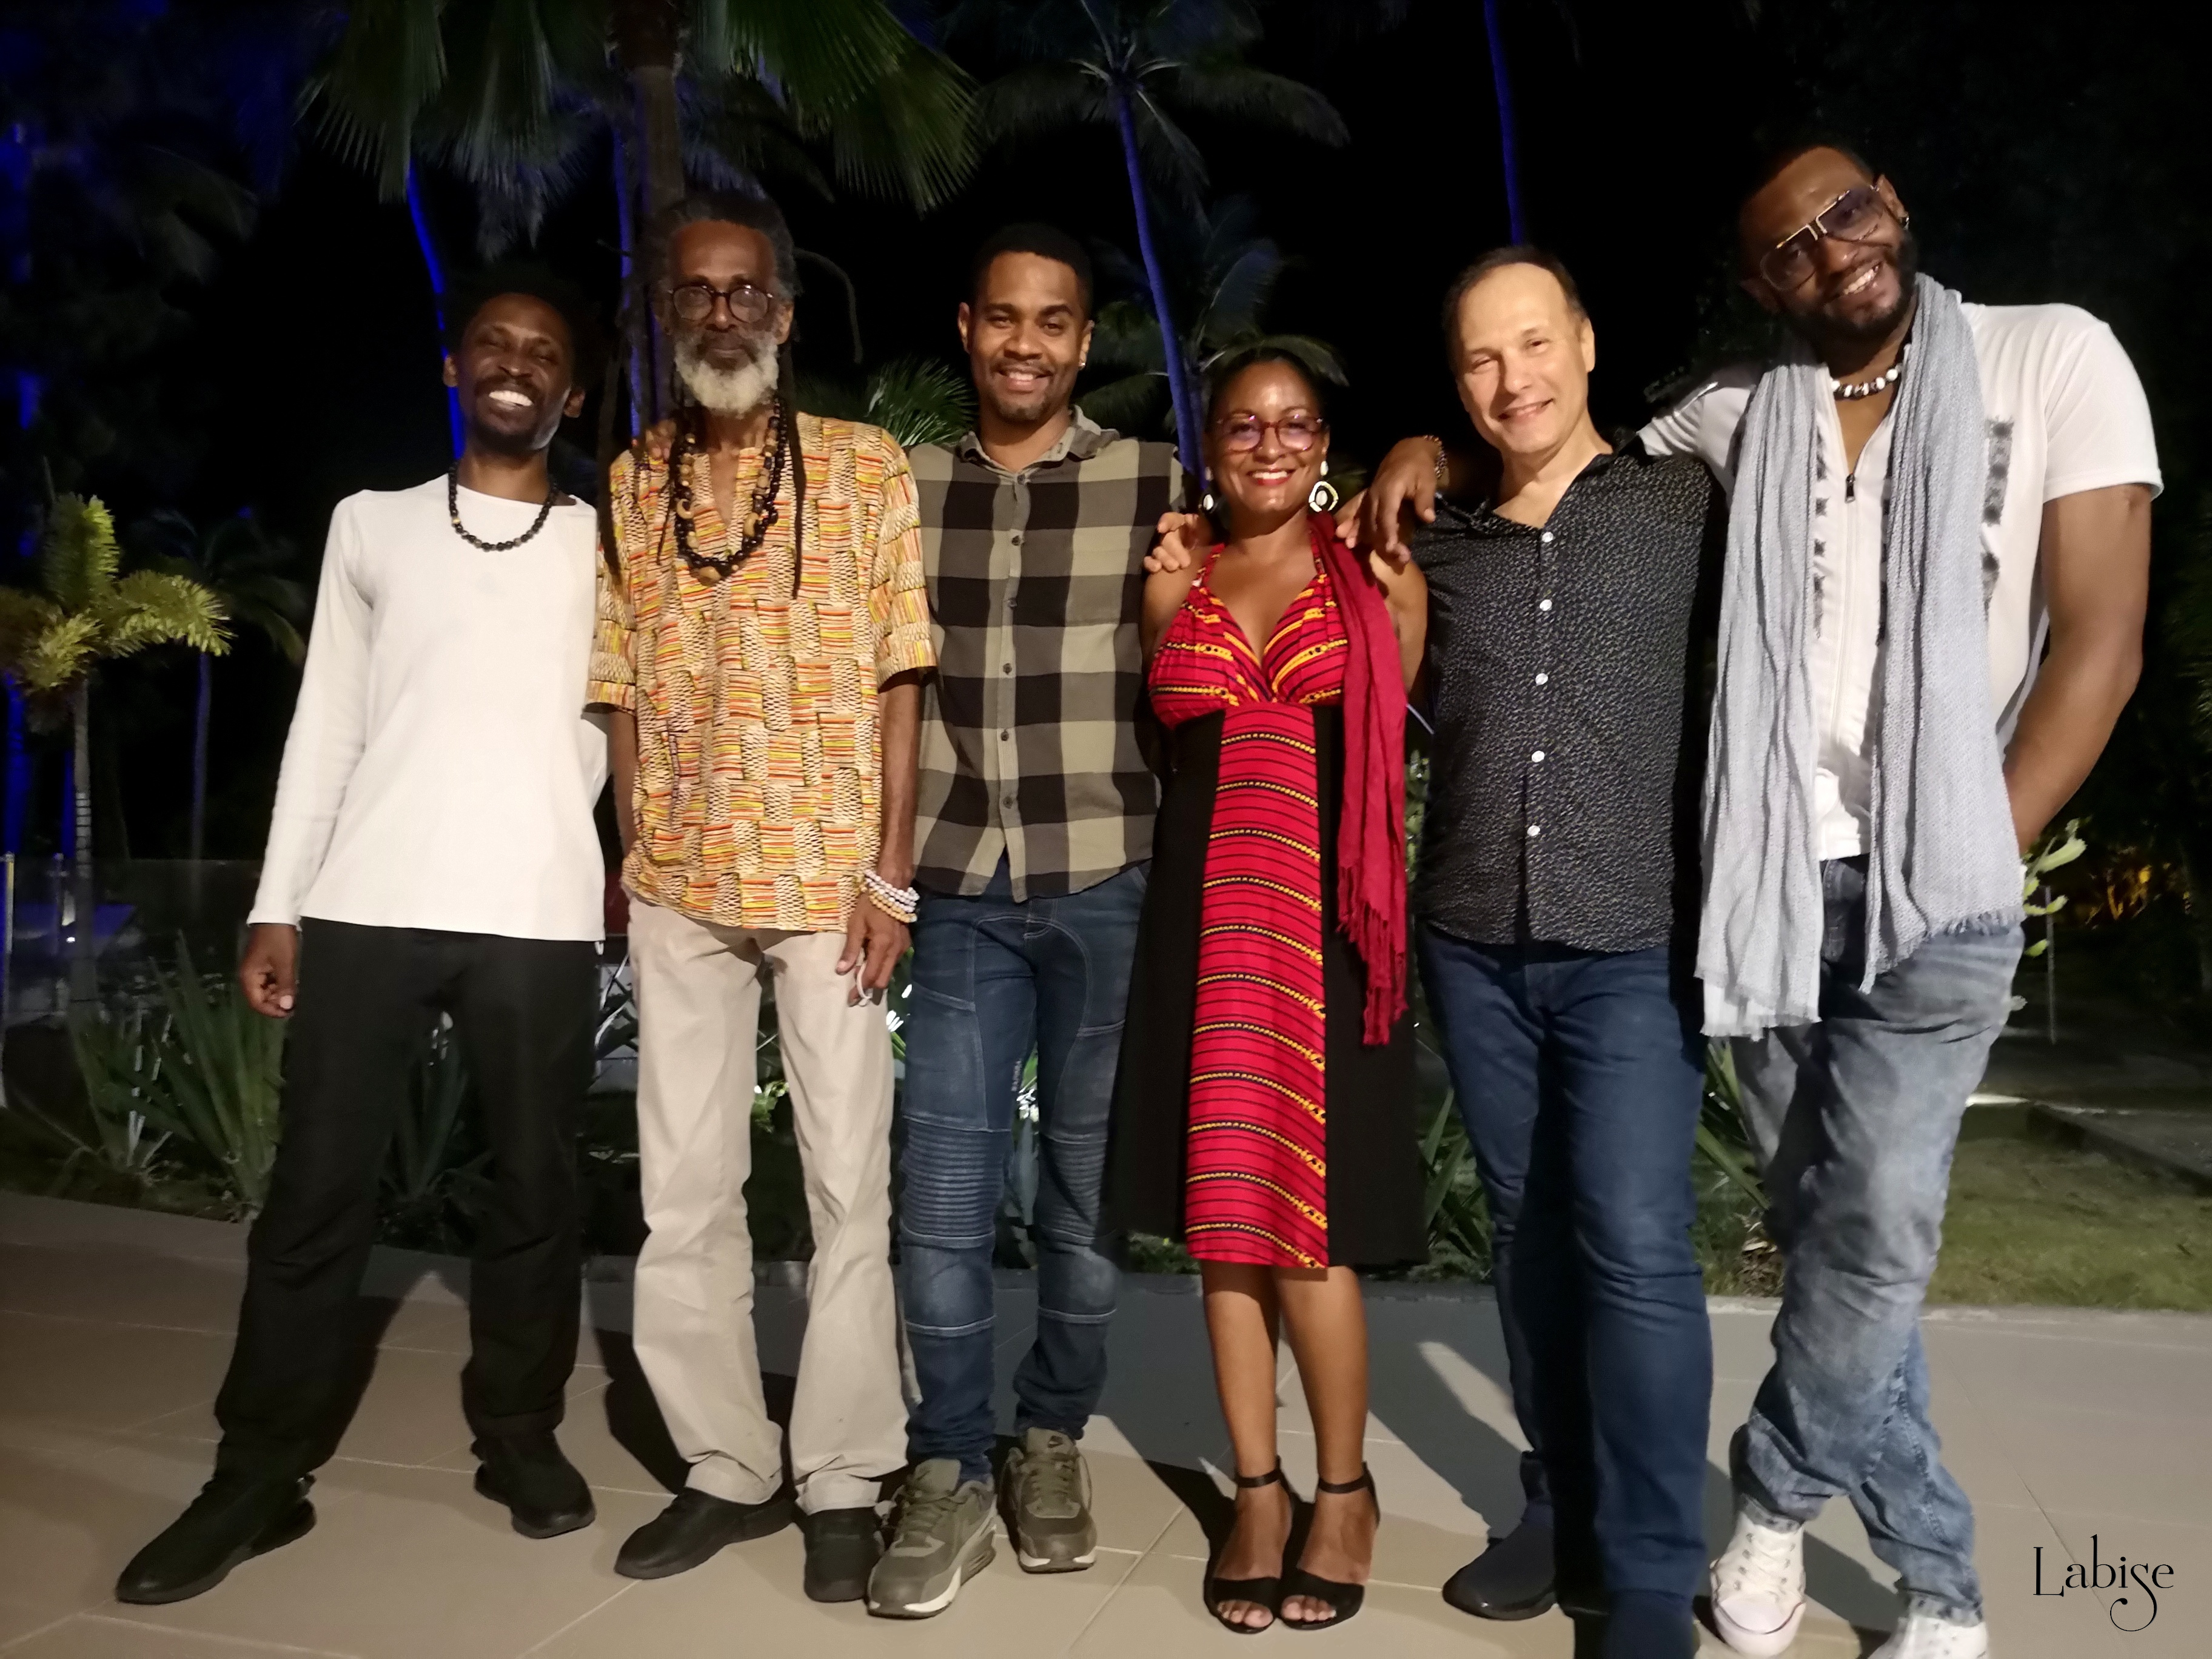 Caribbeab Jazz Group